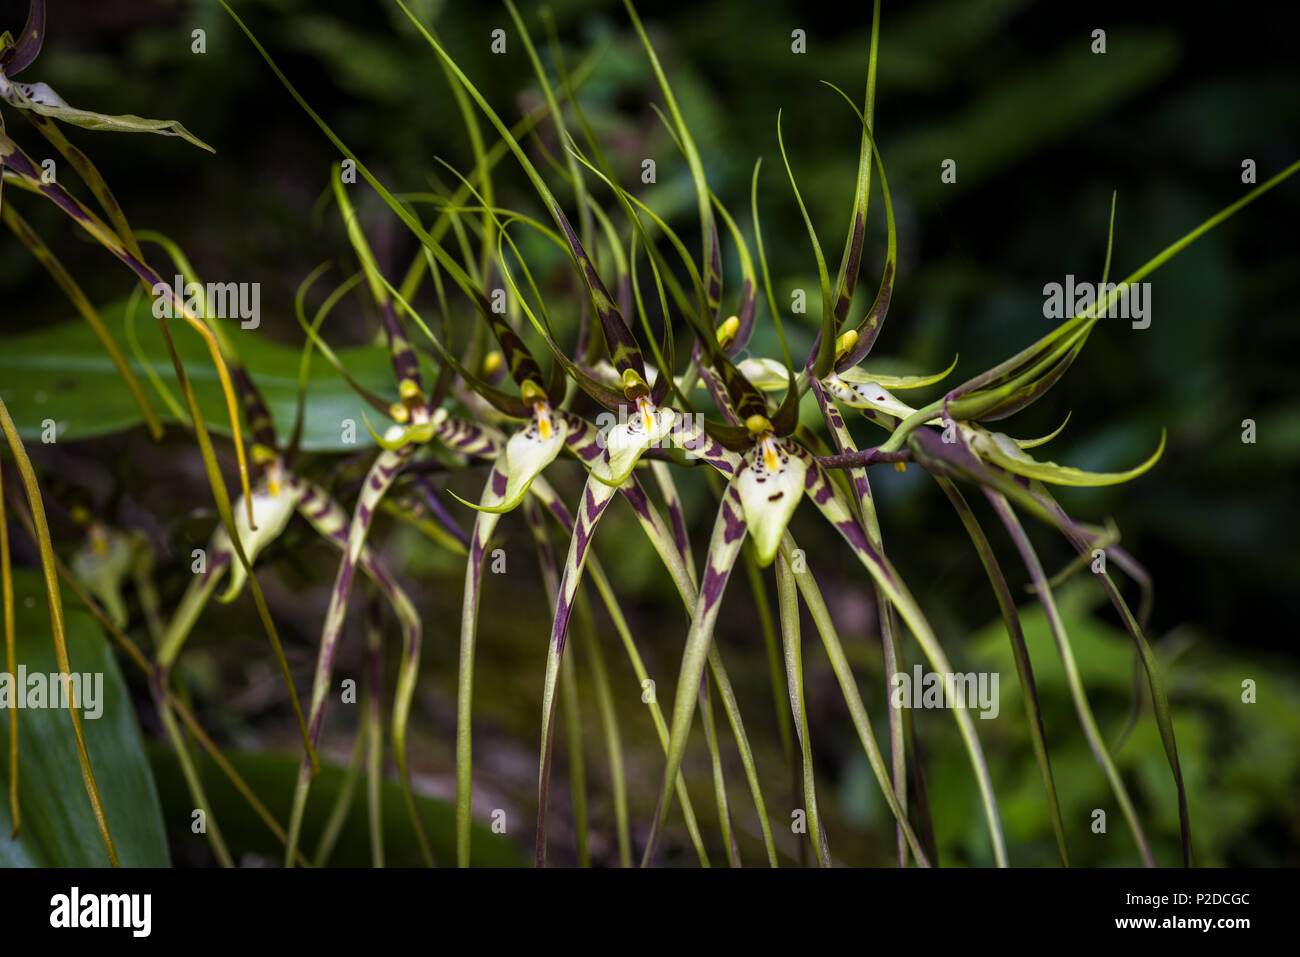 Brassia caudata (spider orchid) image taken in Altos del Maria, Panama Stock Photo